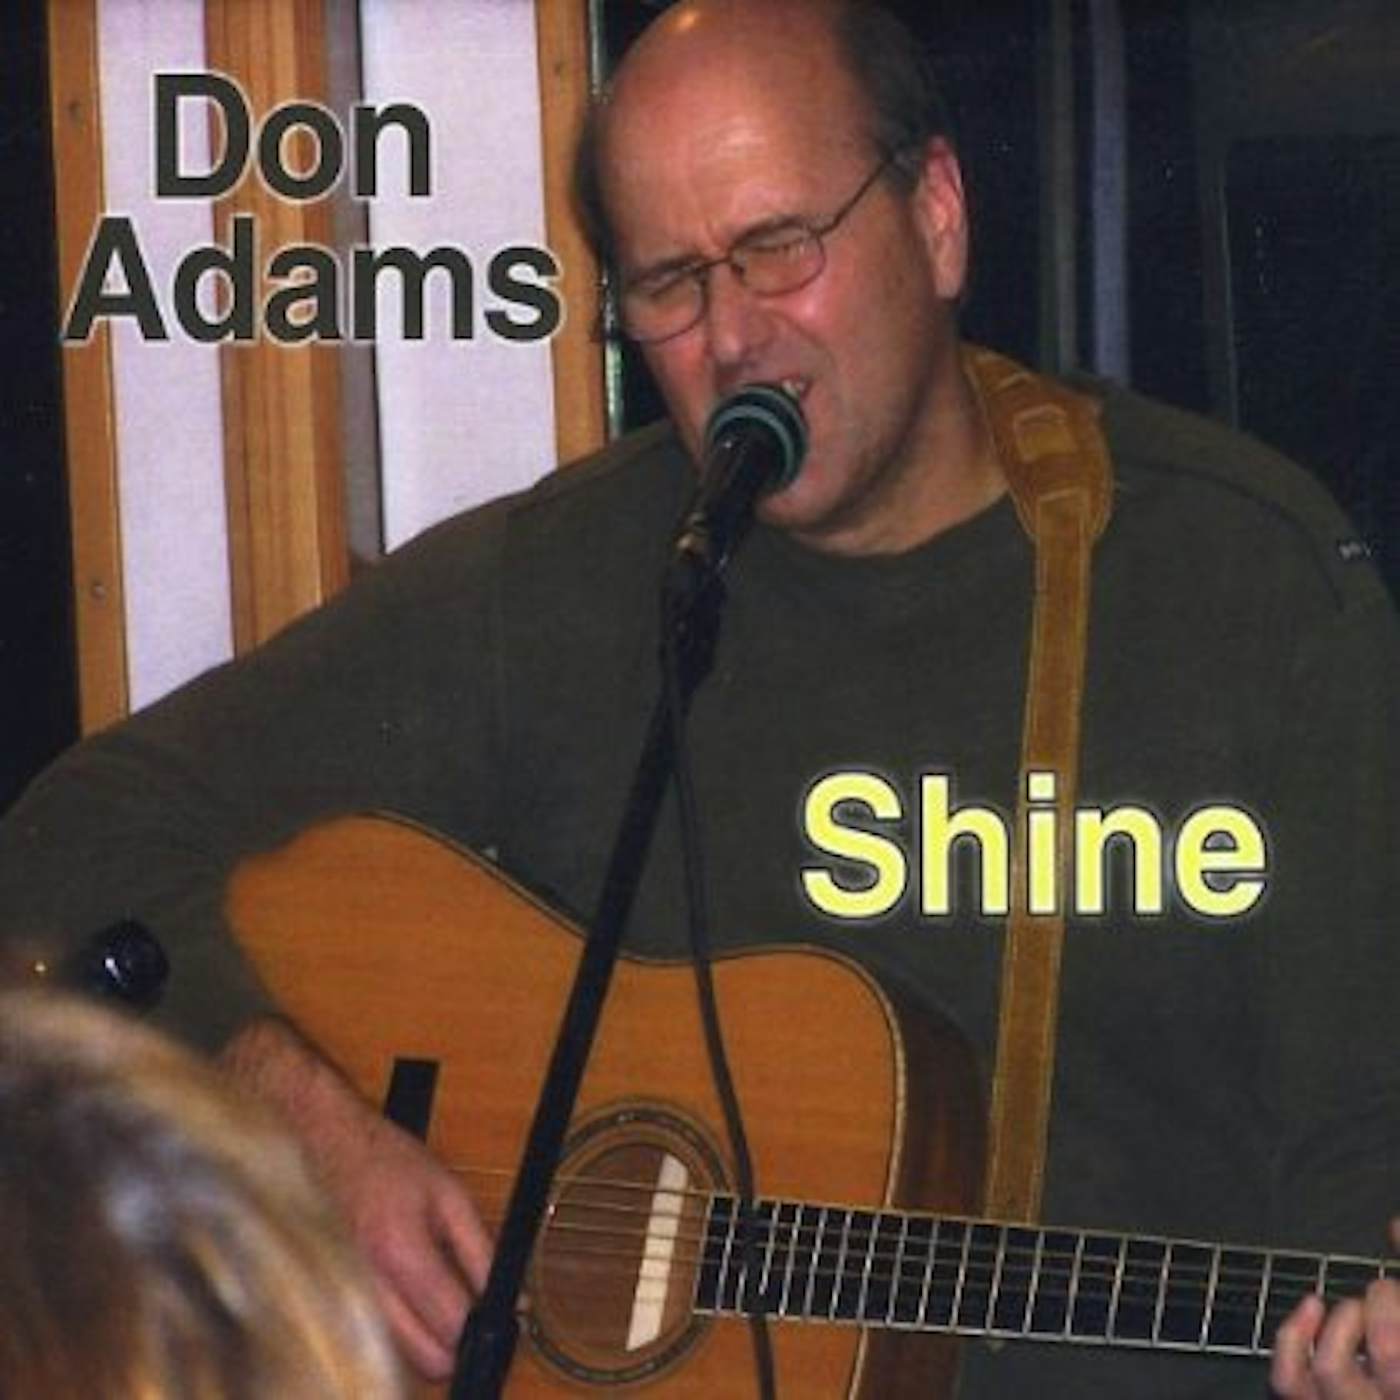 Don Adams SHINE CD